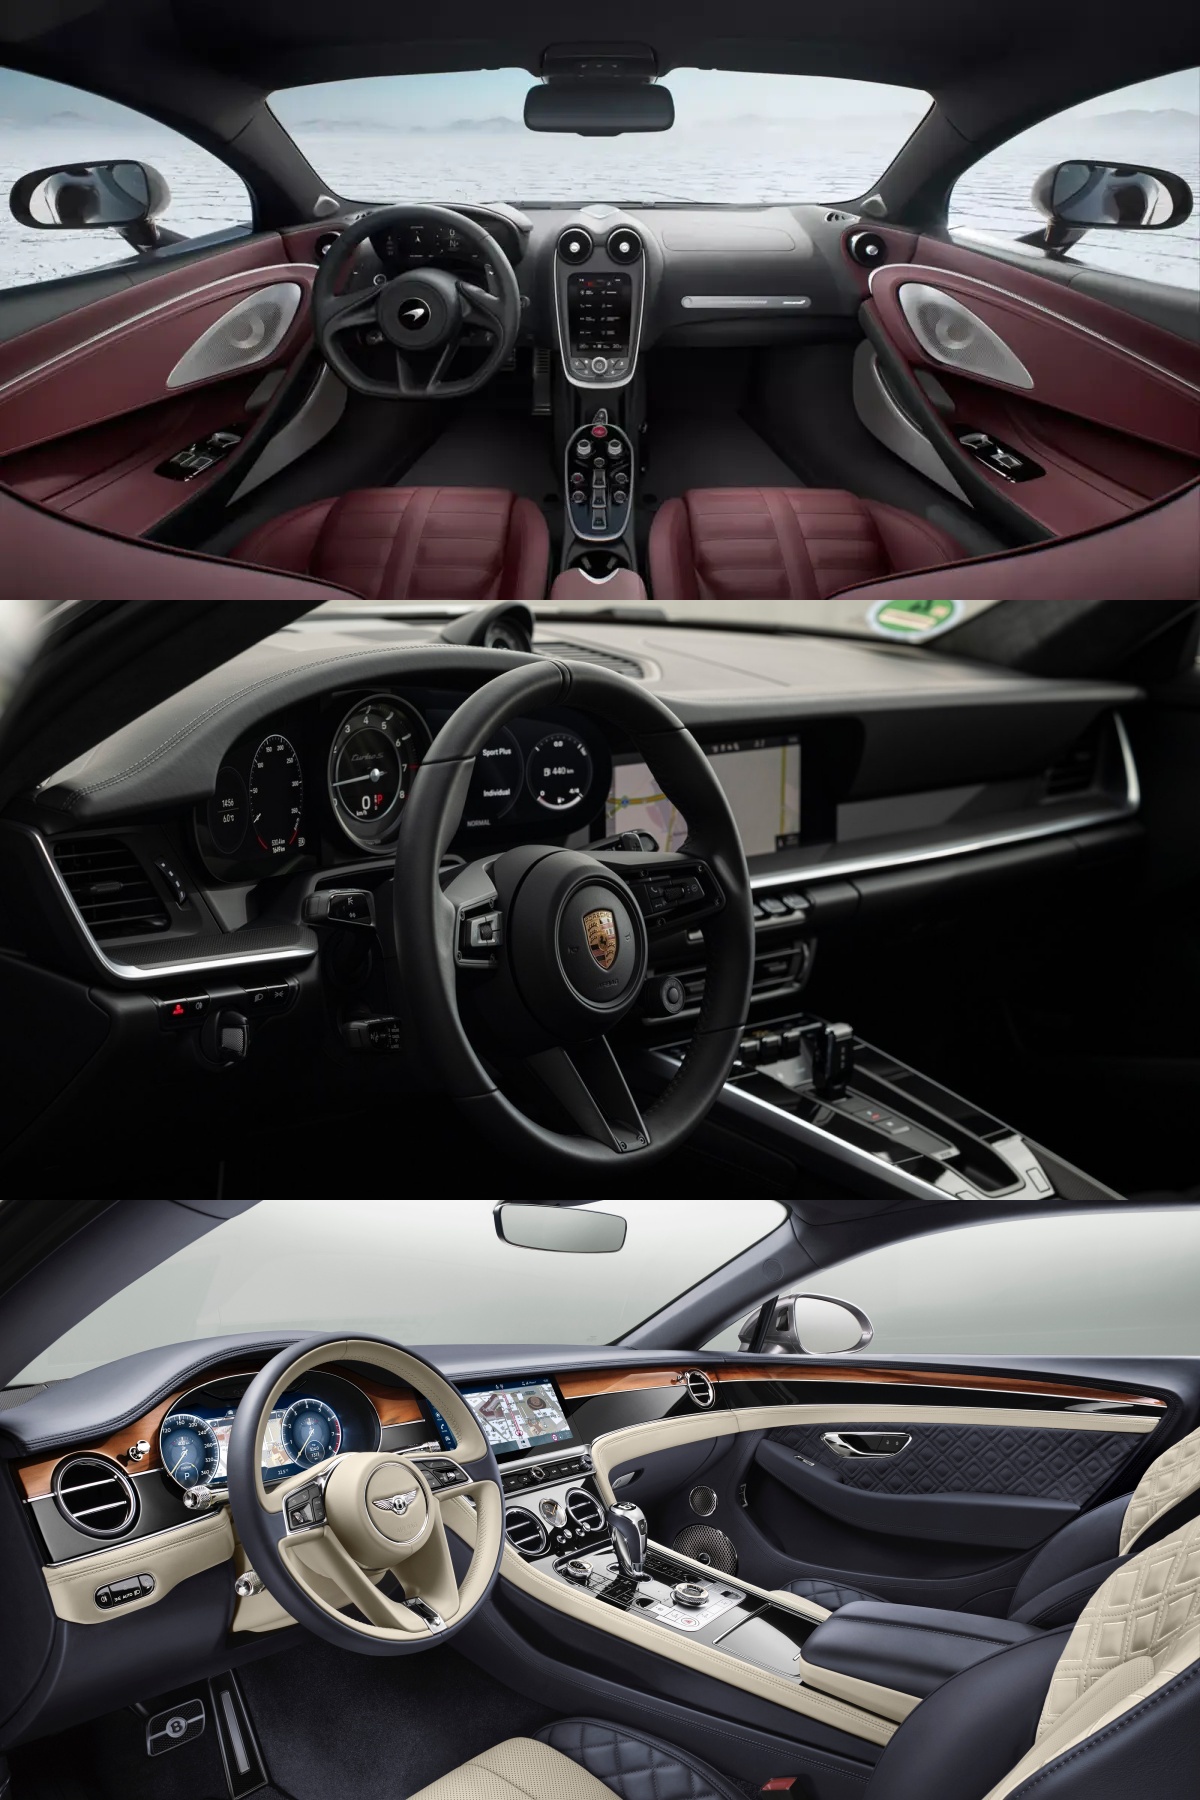 맥라렌 GTS, 포르쉐 911 터보 S, 벤틀리 컨티넨탈 GT의 내부를 비교할 수 있도록 순서대로 사진을 나열하였다.